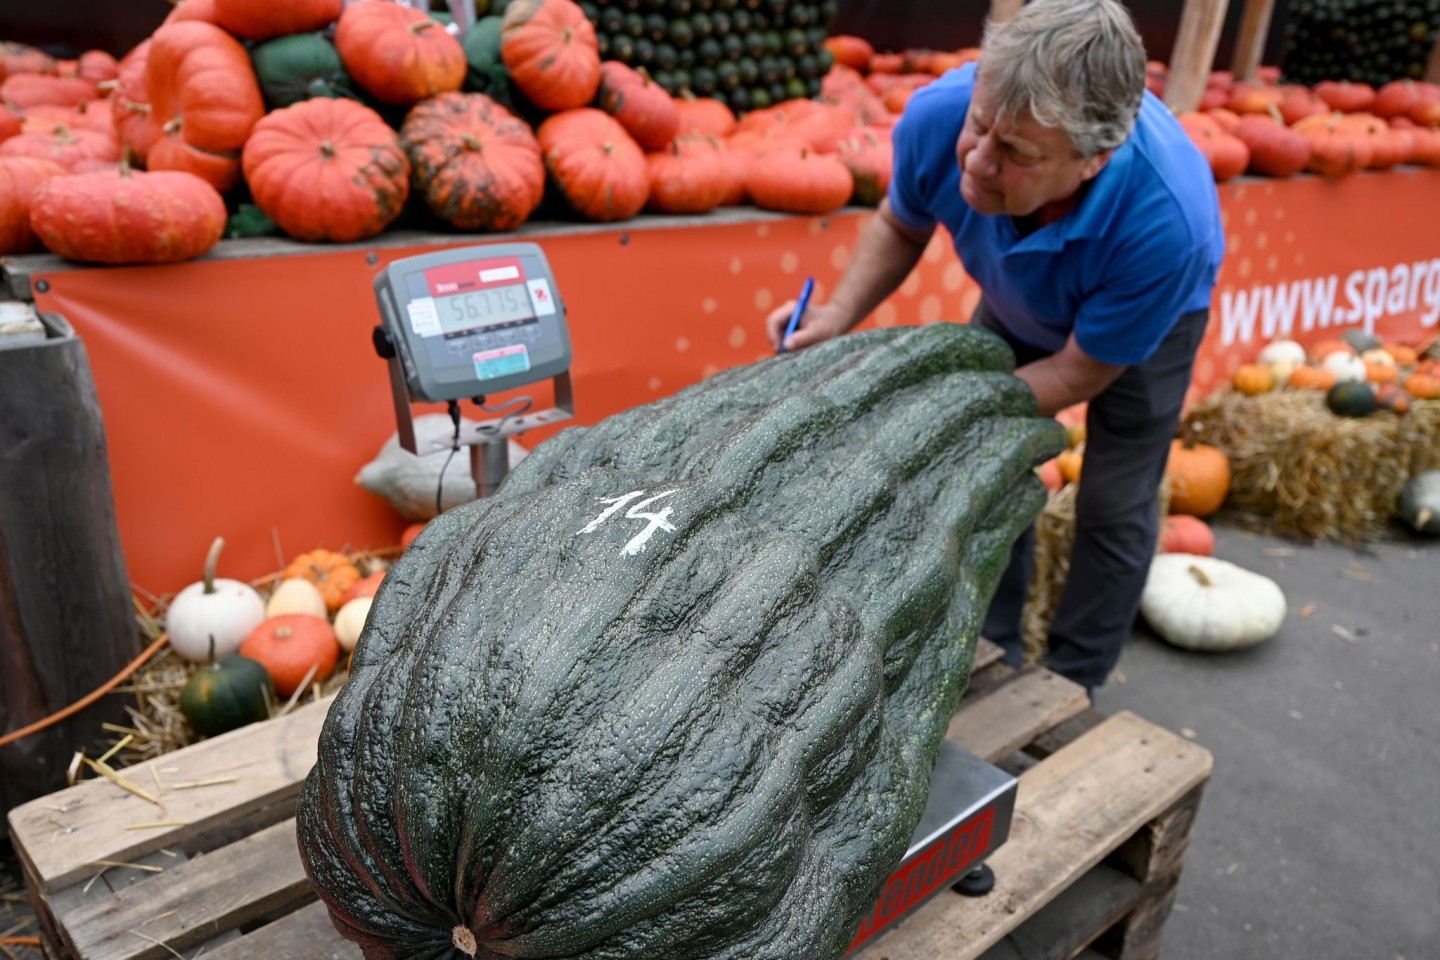 Stolze 56,75 Kilo brachte diese Zucchini auf die Waage - ein neuer deutscher Rekord.